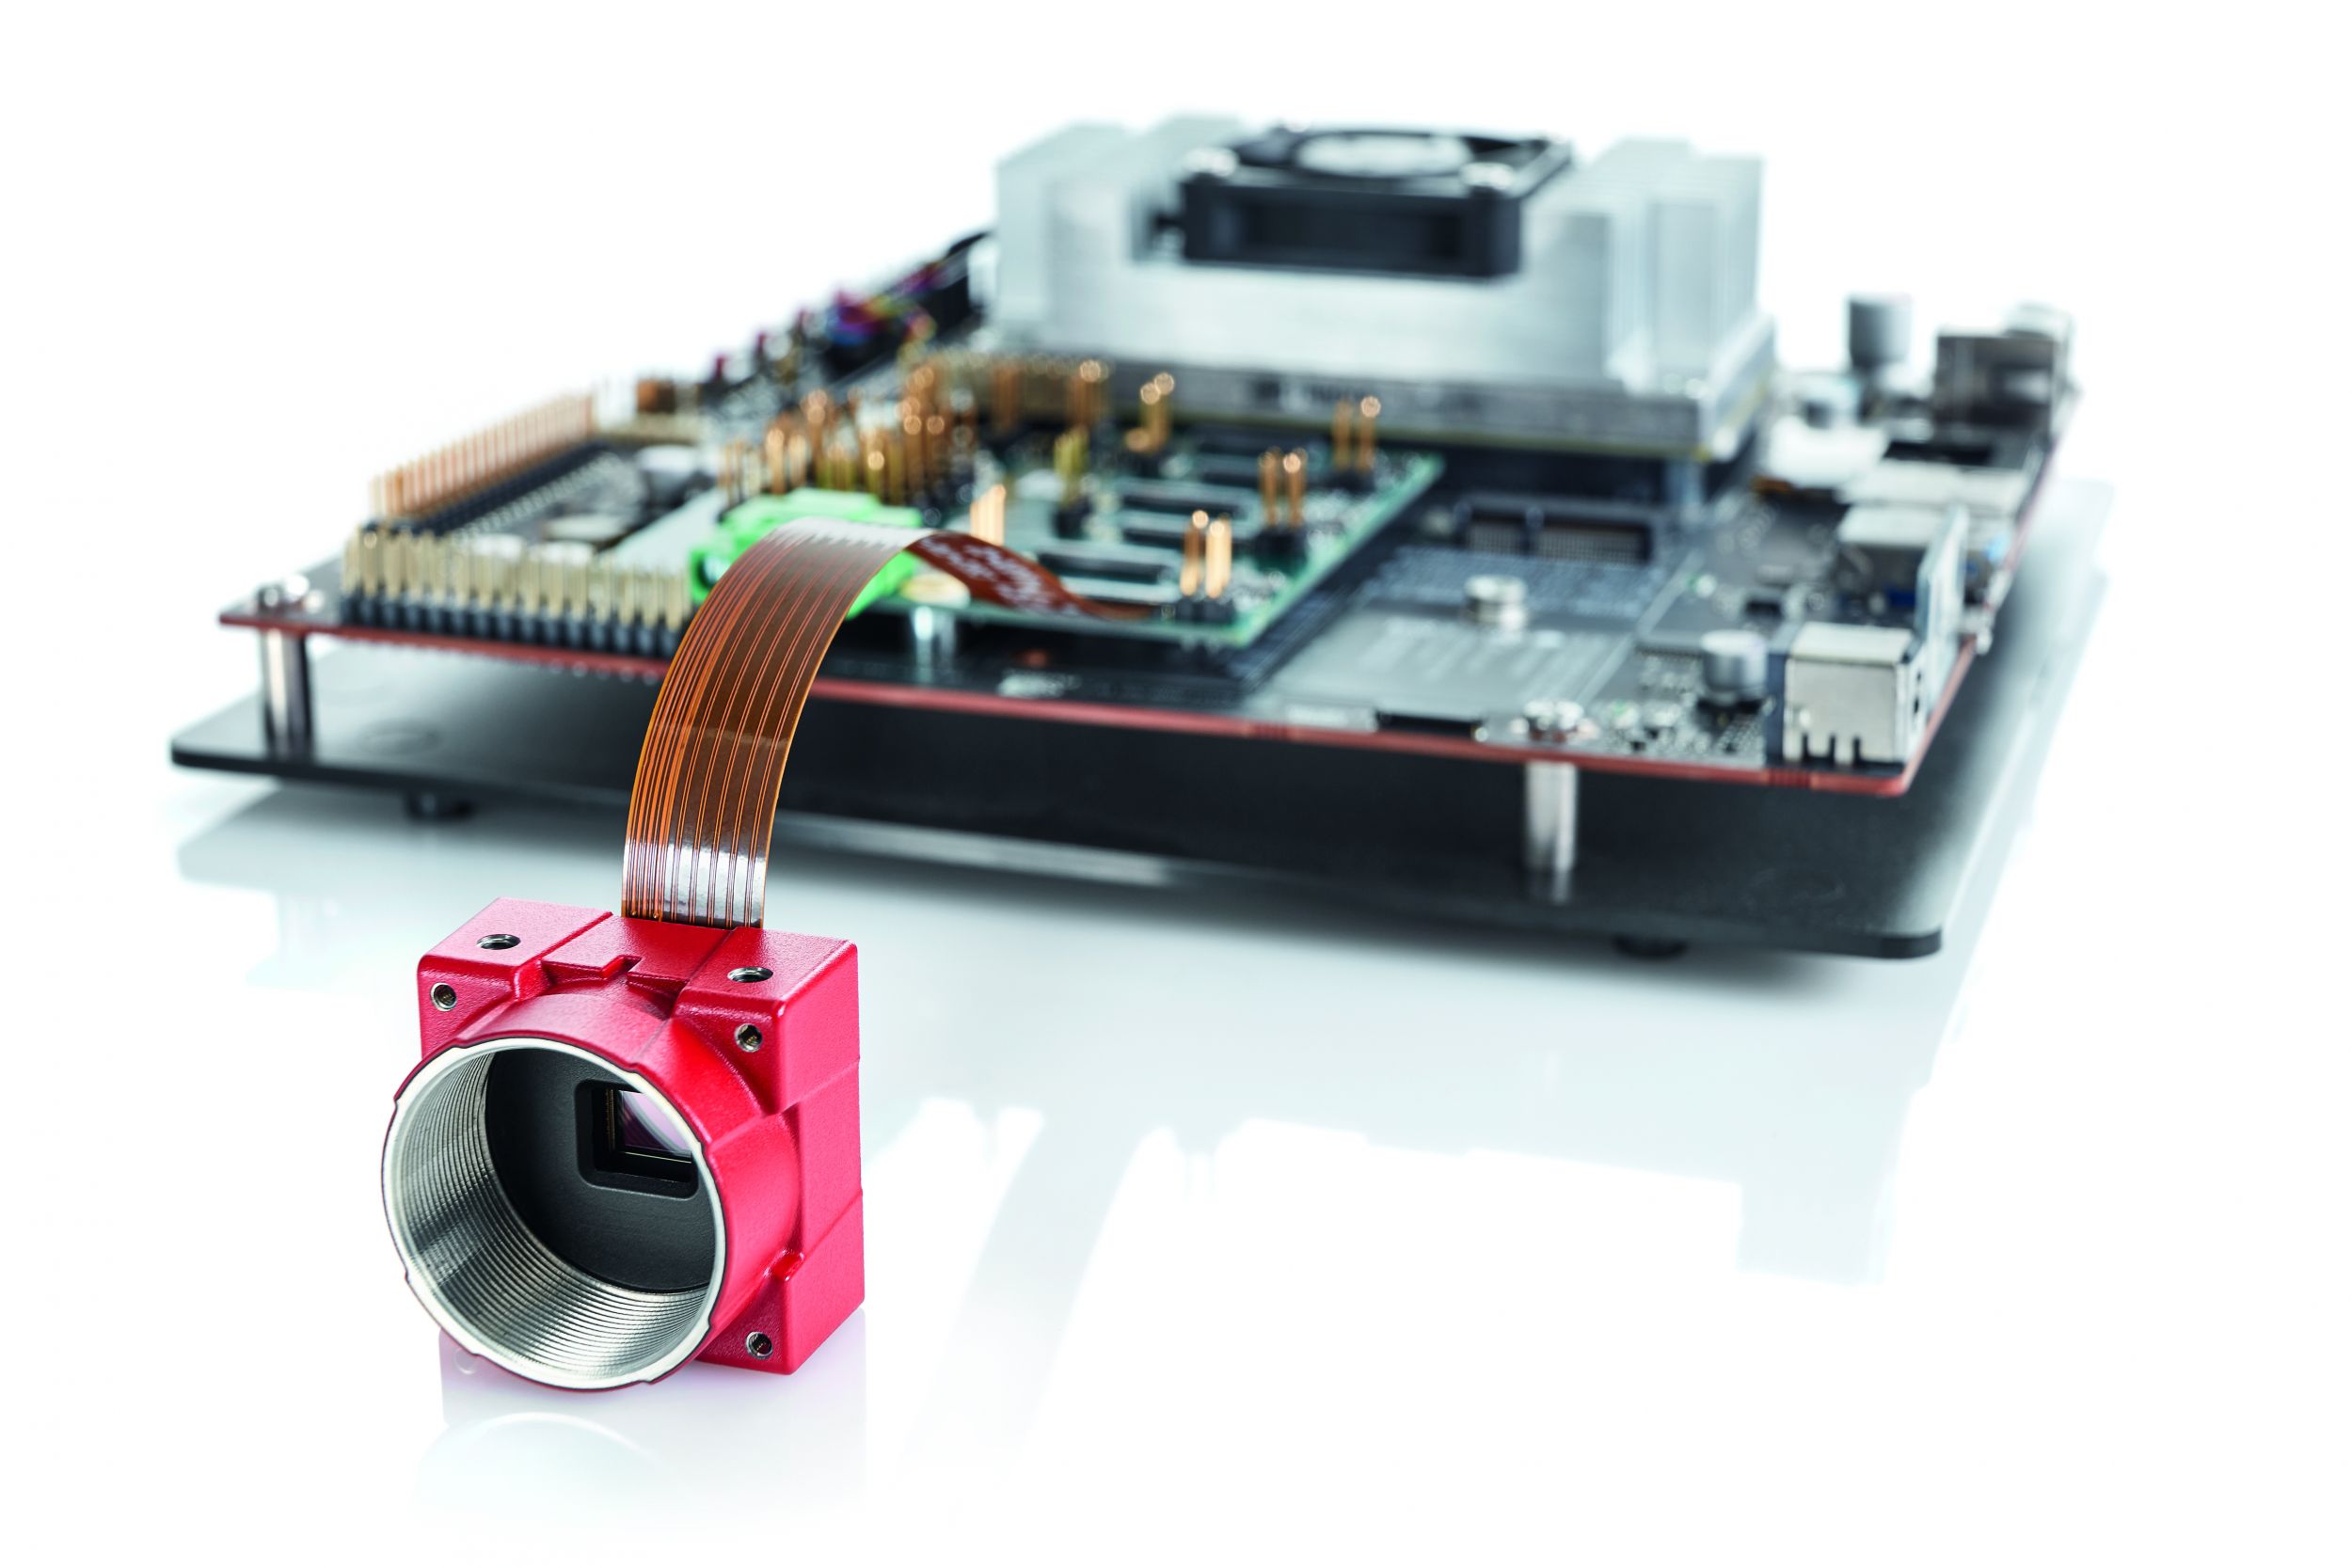  Der Alvium SoC beherbergt eine verarbeitungsbibliothek und einen Image-Signal-Prozessor (ISP), mit dem optimierungsfunktionen bereits in der Kamera angewendet werden können. Zur Markteinführung der Alvium Serie werden zunächst die NXP i.MX6 und Nvidia-Jetson-Plattformen unterstützt. (Bild: ALLIED Vision Technologies GmbH)